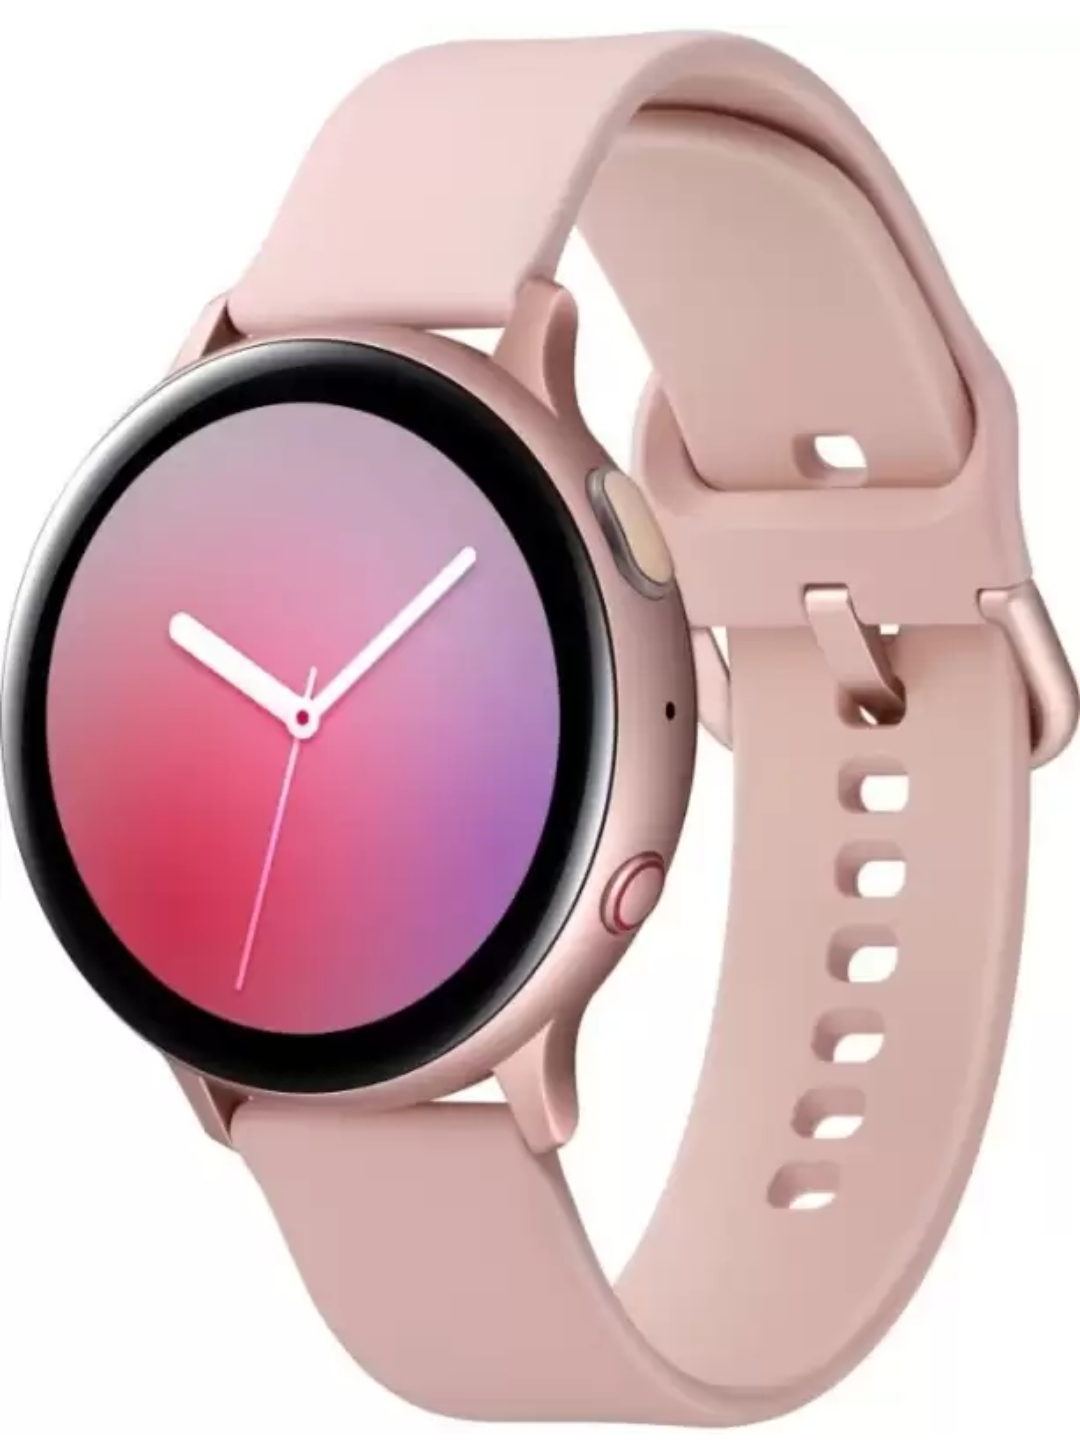 Active 2 round smart watch pink